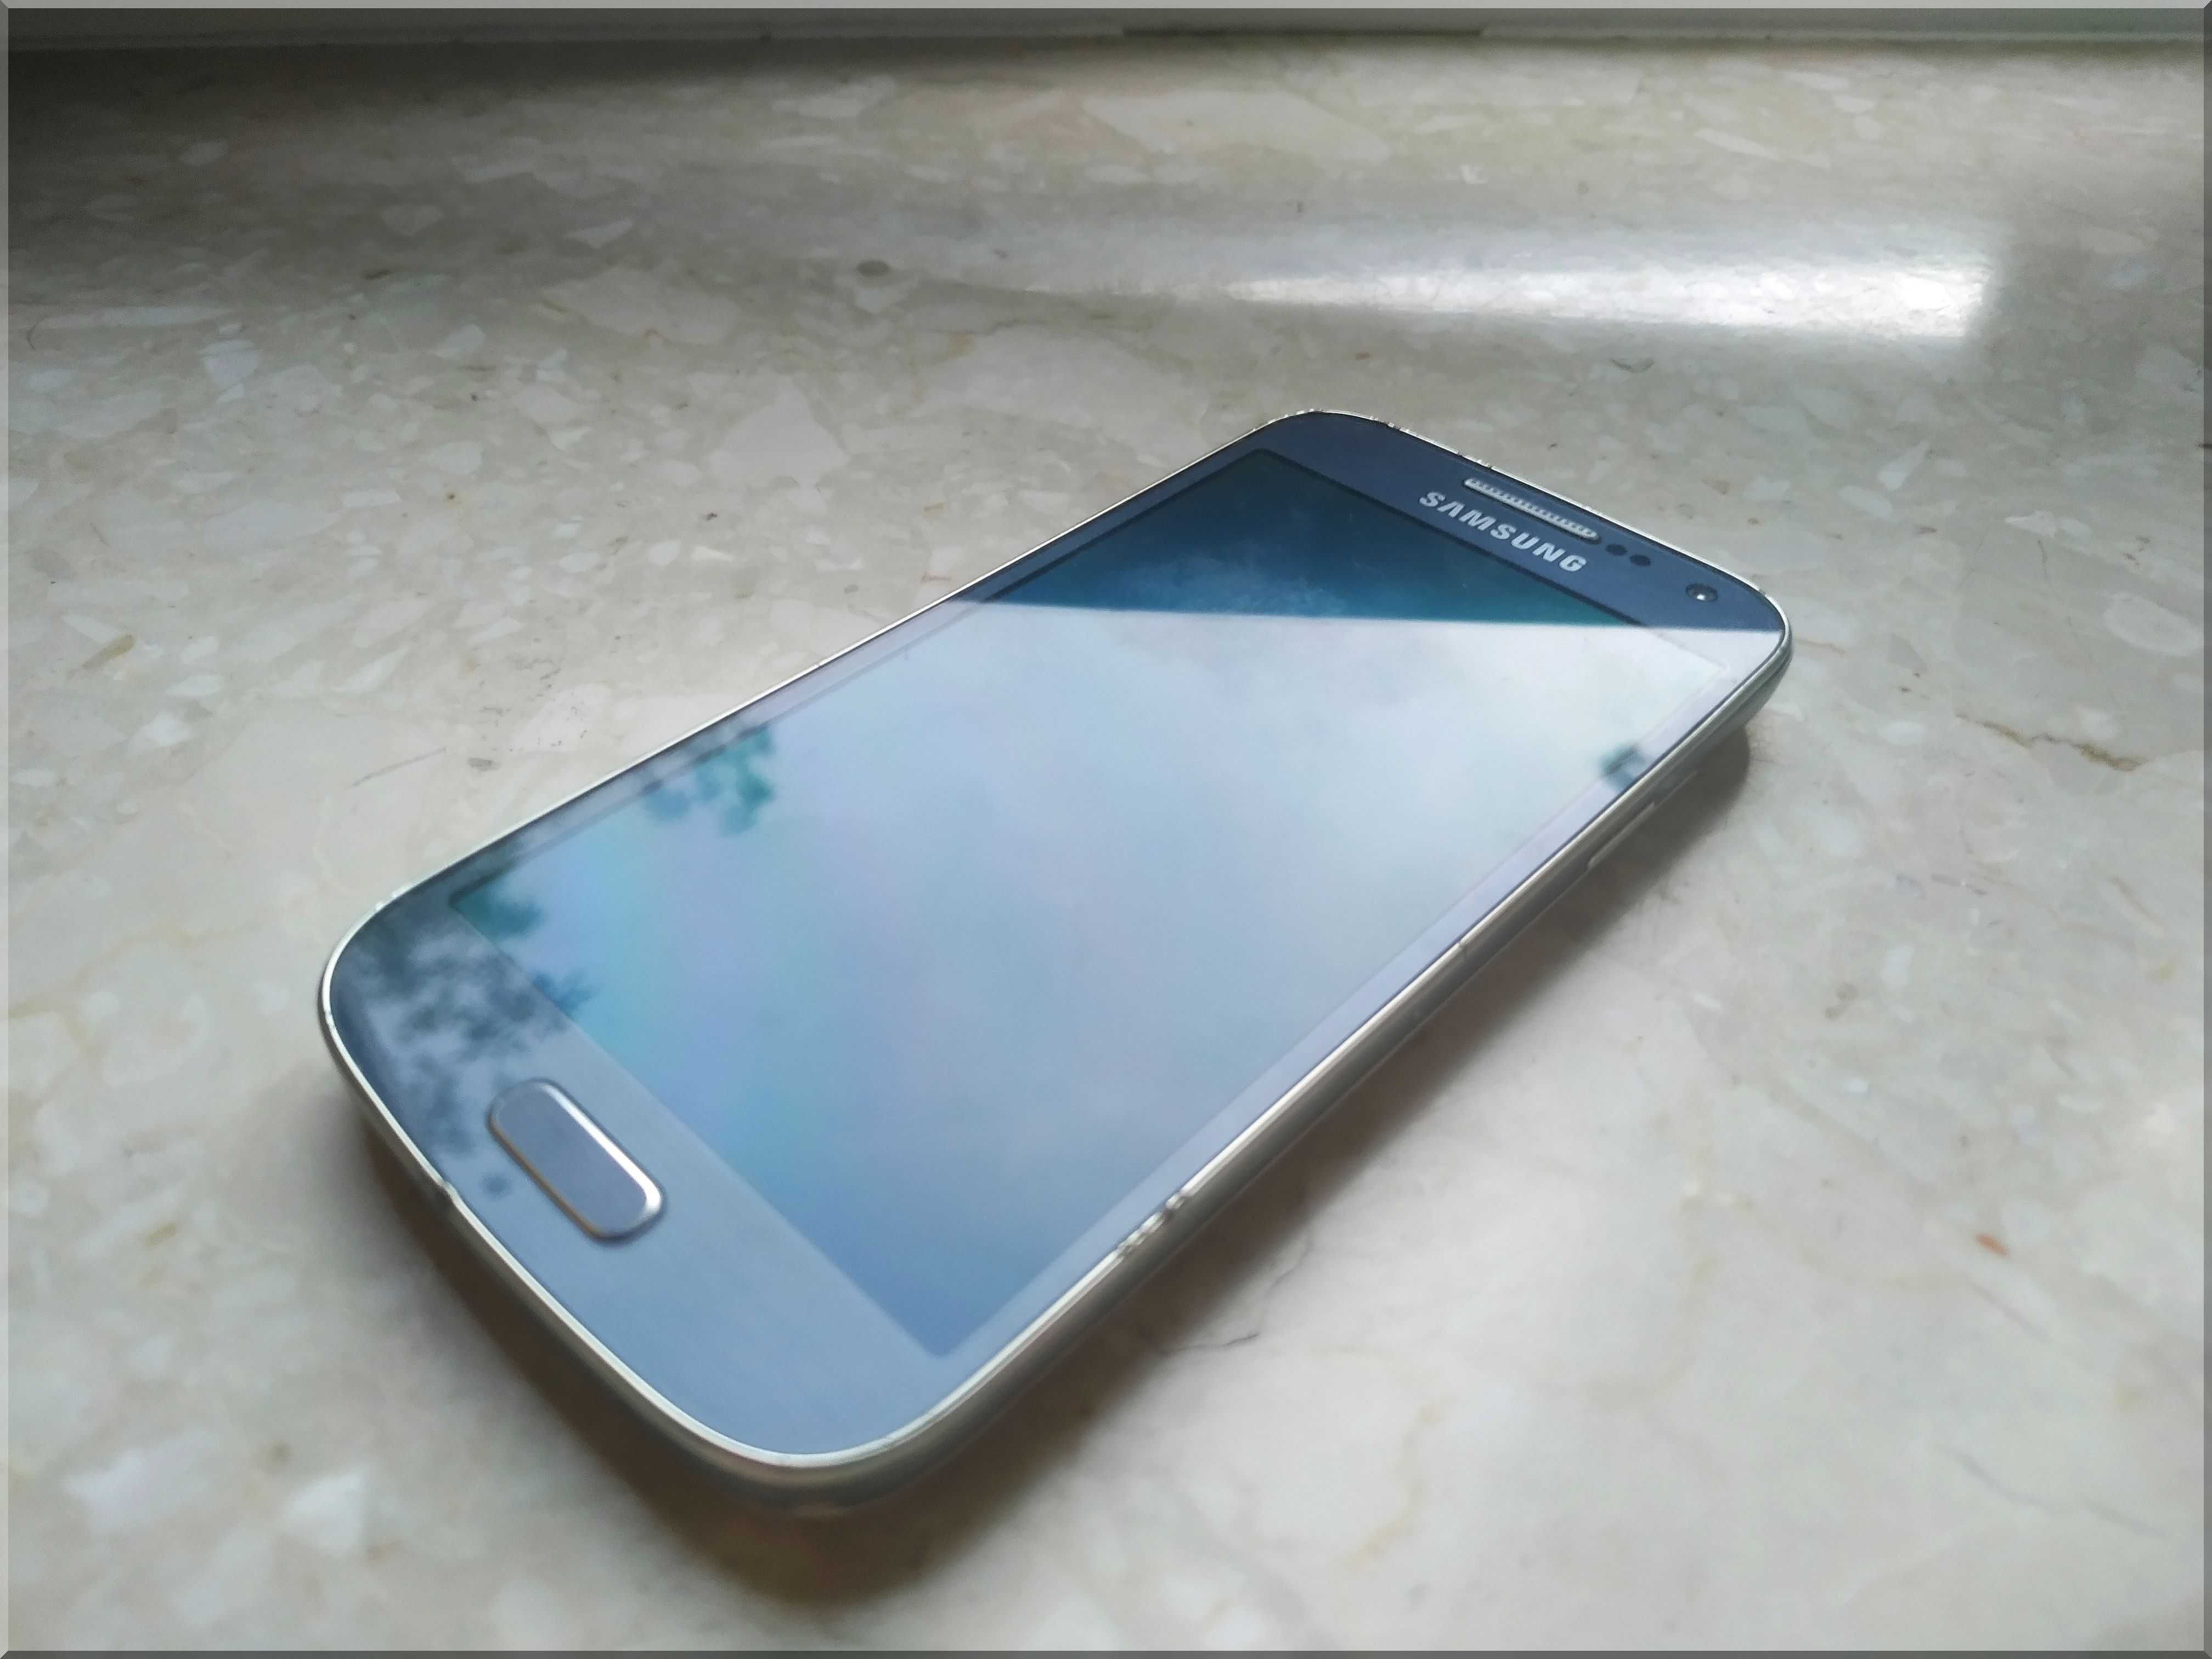 Samsung Galaxy S4 mini GT-I9505